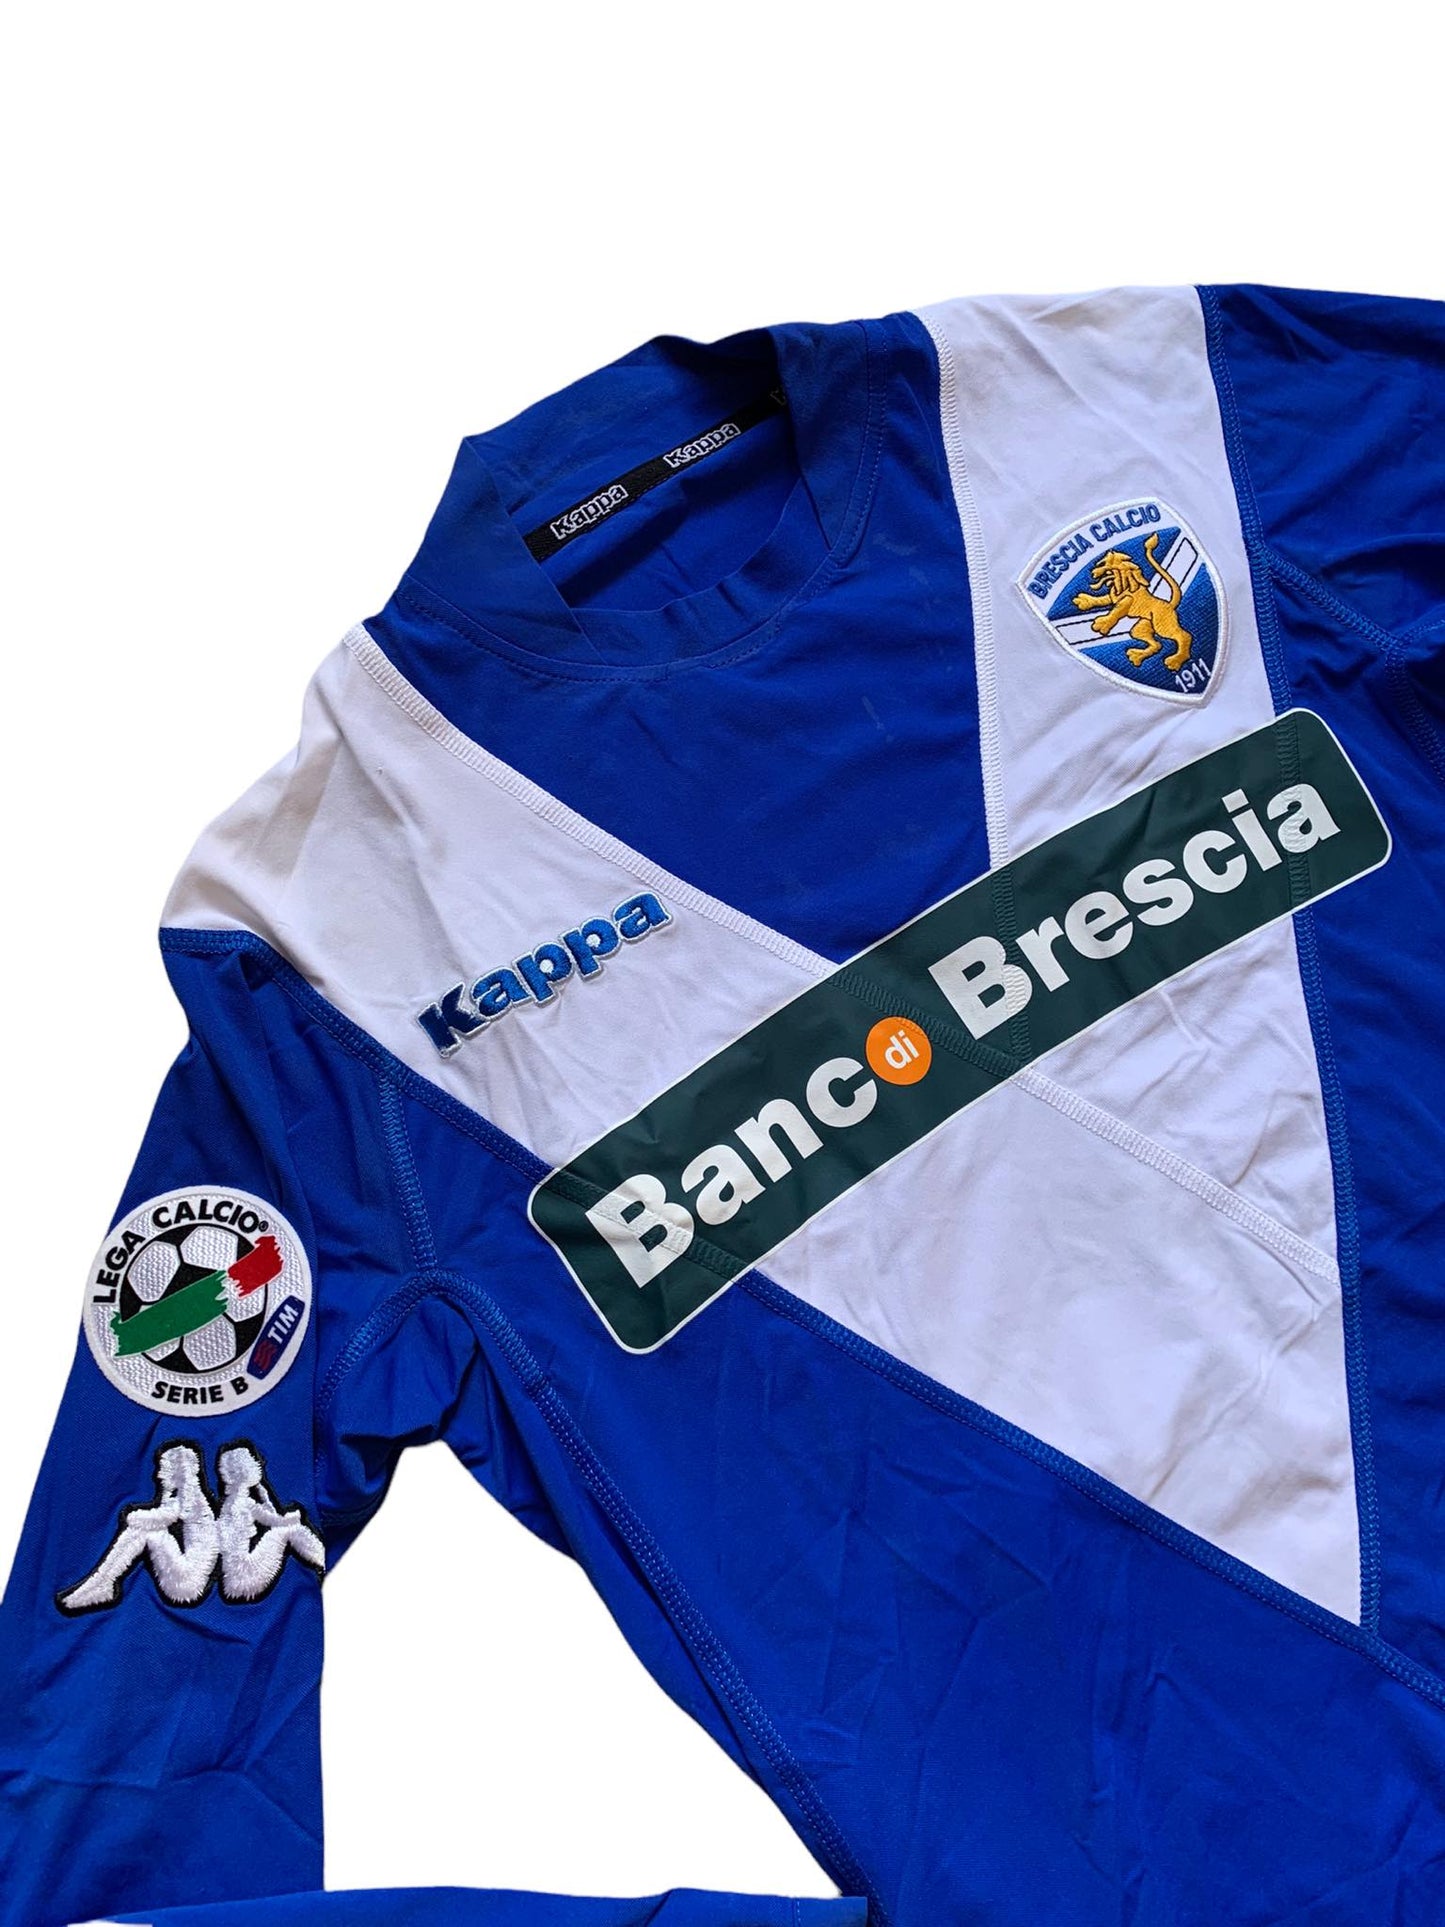 Brescia Calcio 2005/06 Home Shirt (L) - Dallamano 23 (Signed & Worn) - KITLAUNCH